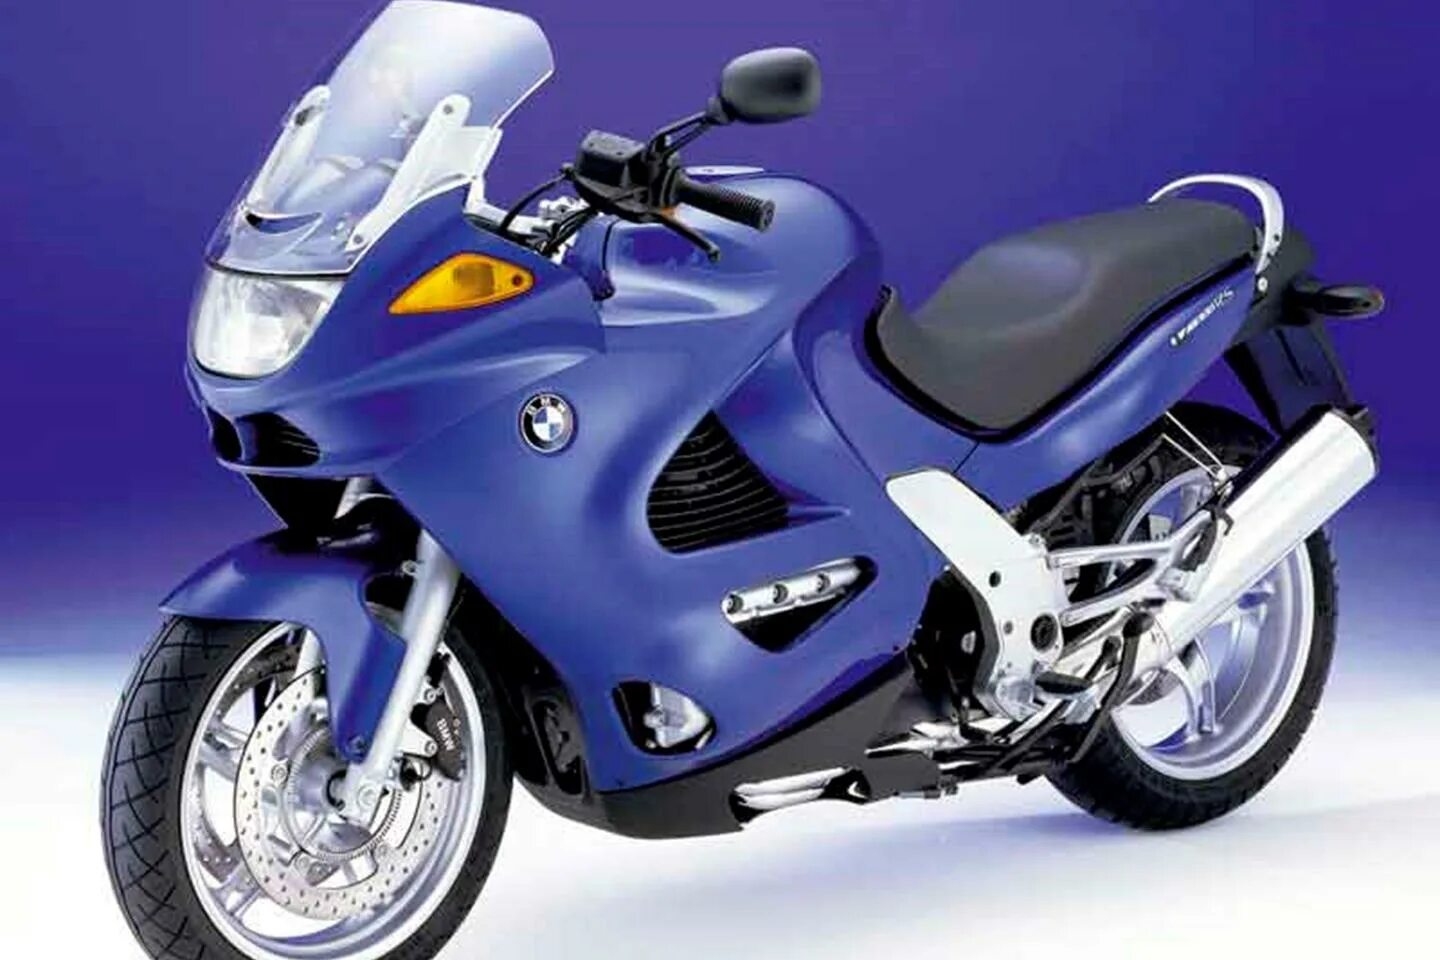 Купить бу мотоцикл в спб. BMW k1200rs. K1200rs. K1200rs фото. Синий мотоцикл.